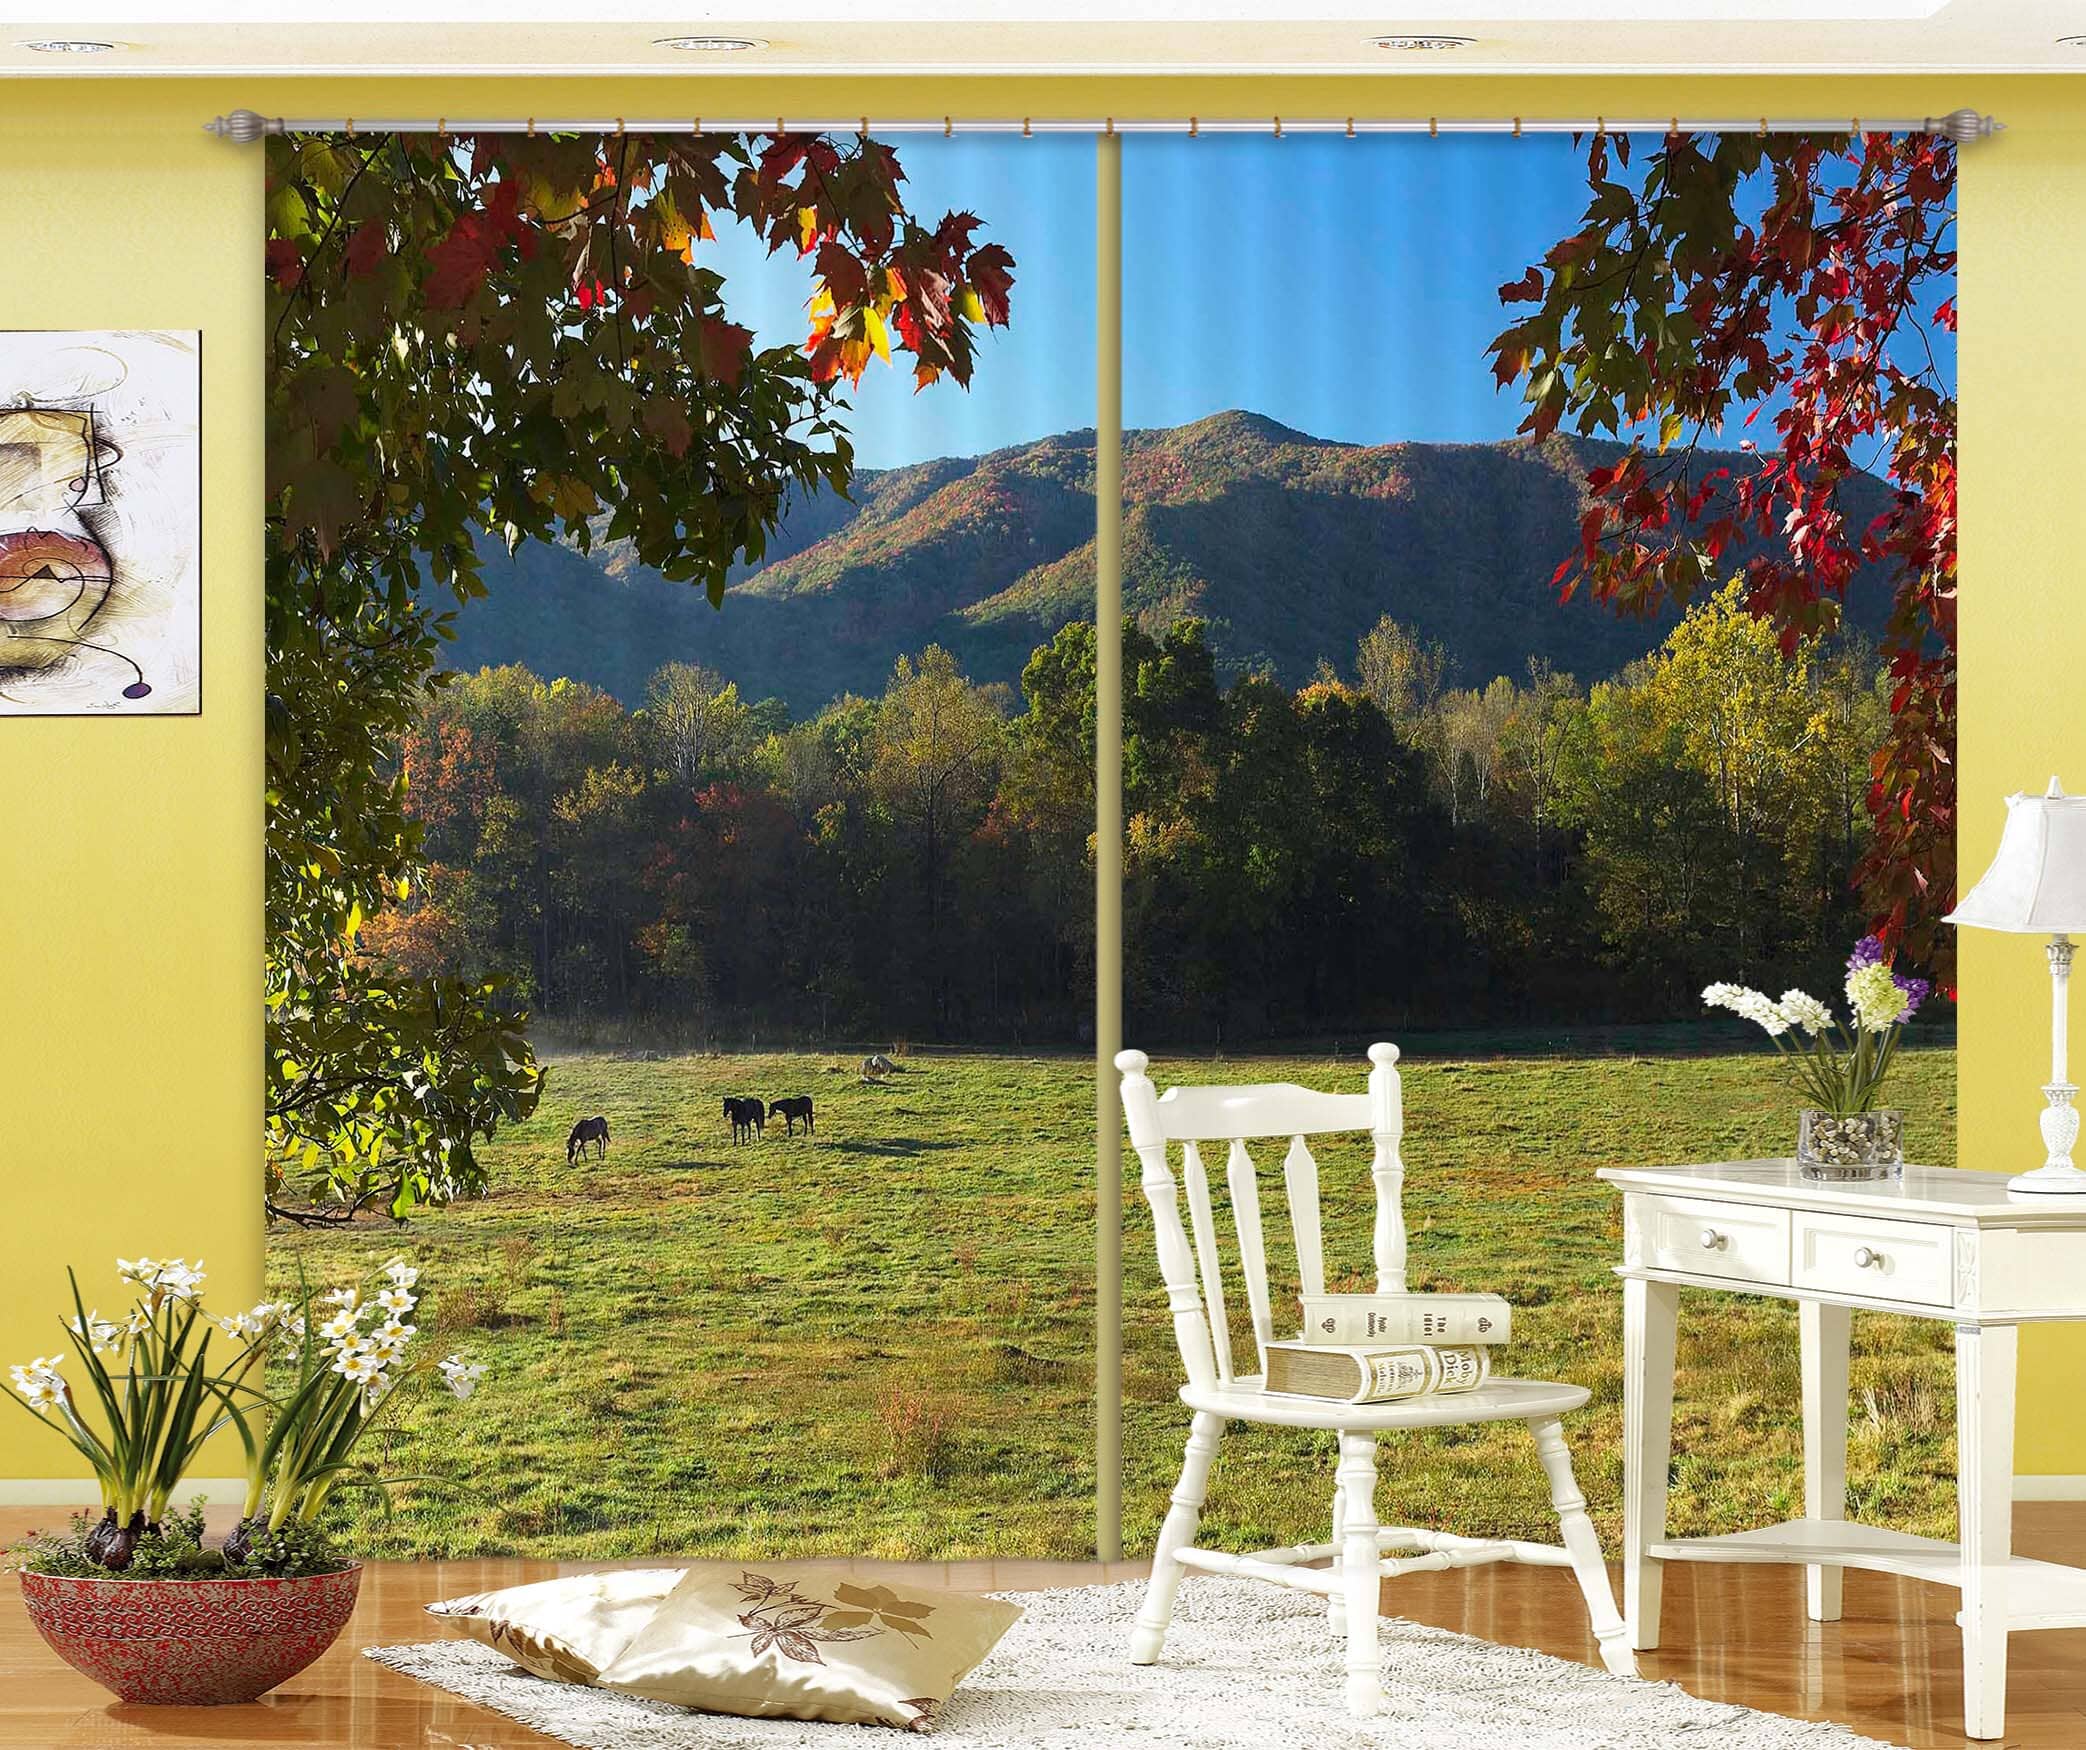 3D Prairie Horse 054 Kathy Barefield Curtain Curtains Drapes Curtains AJ Creativity Home 